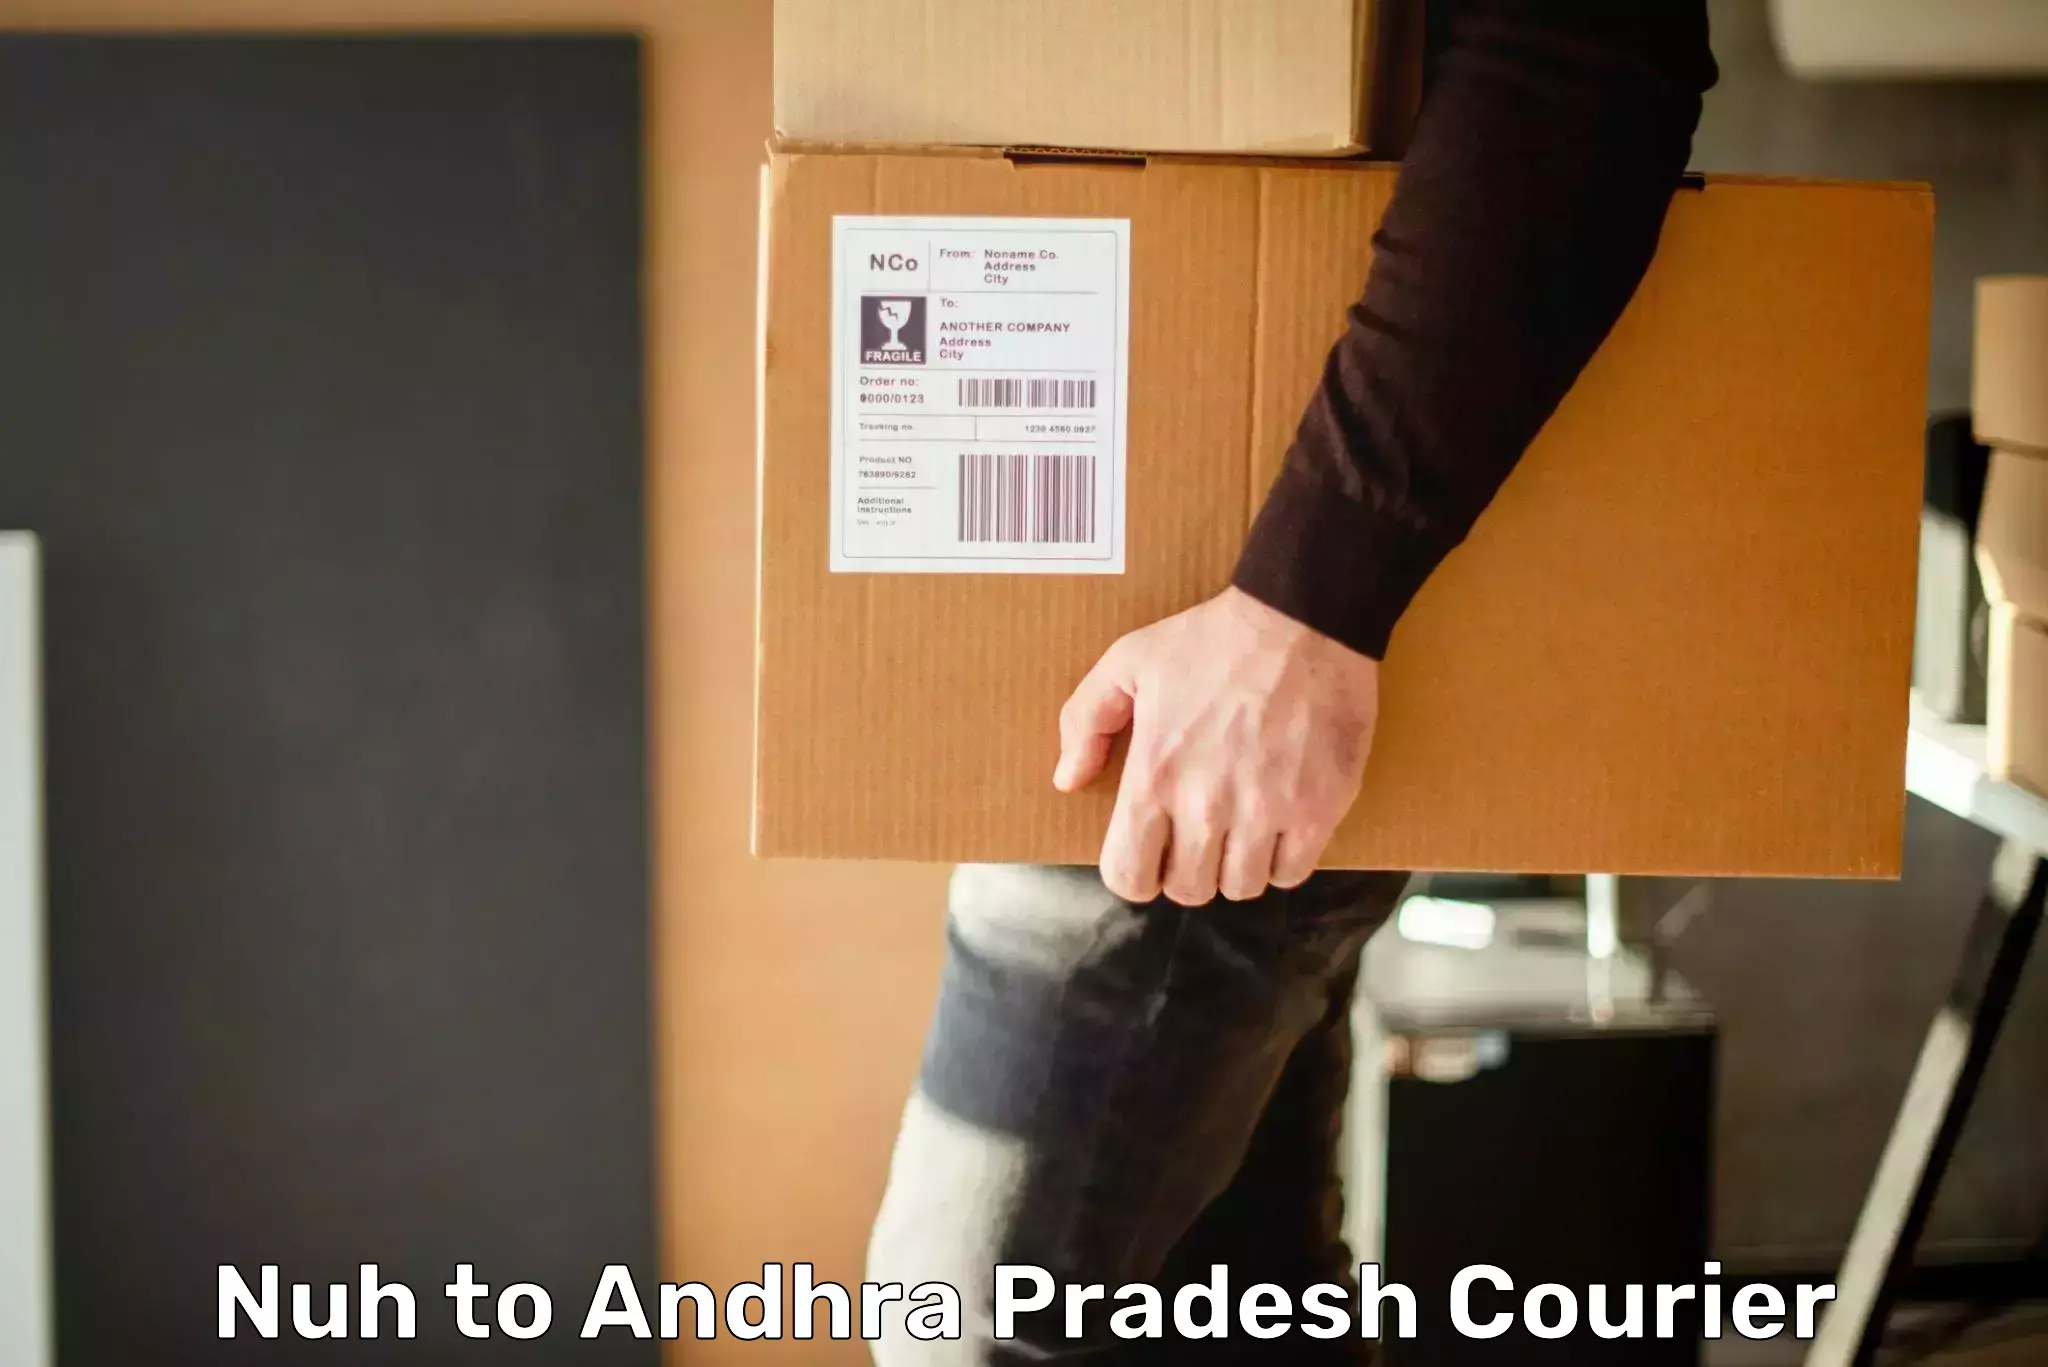 Speedy delivery service Nuh to Andhra Pradesh